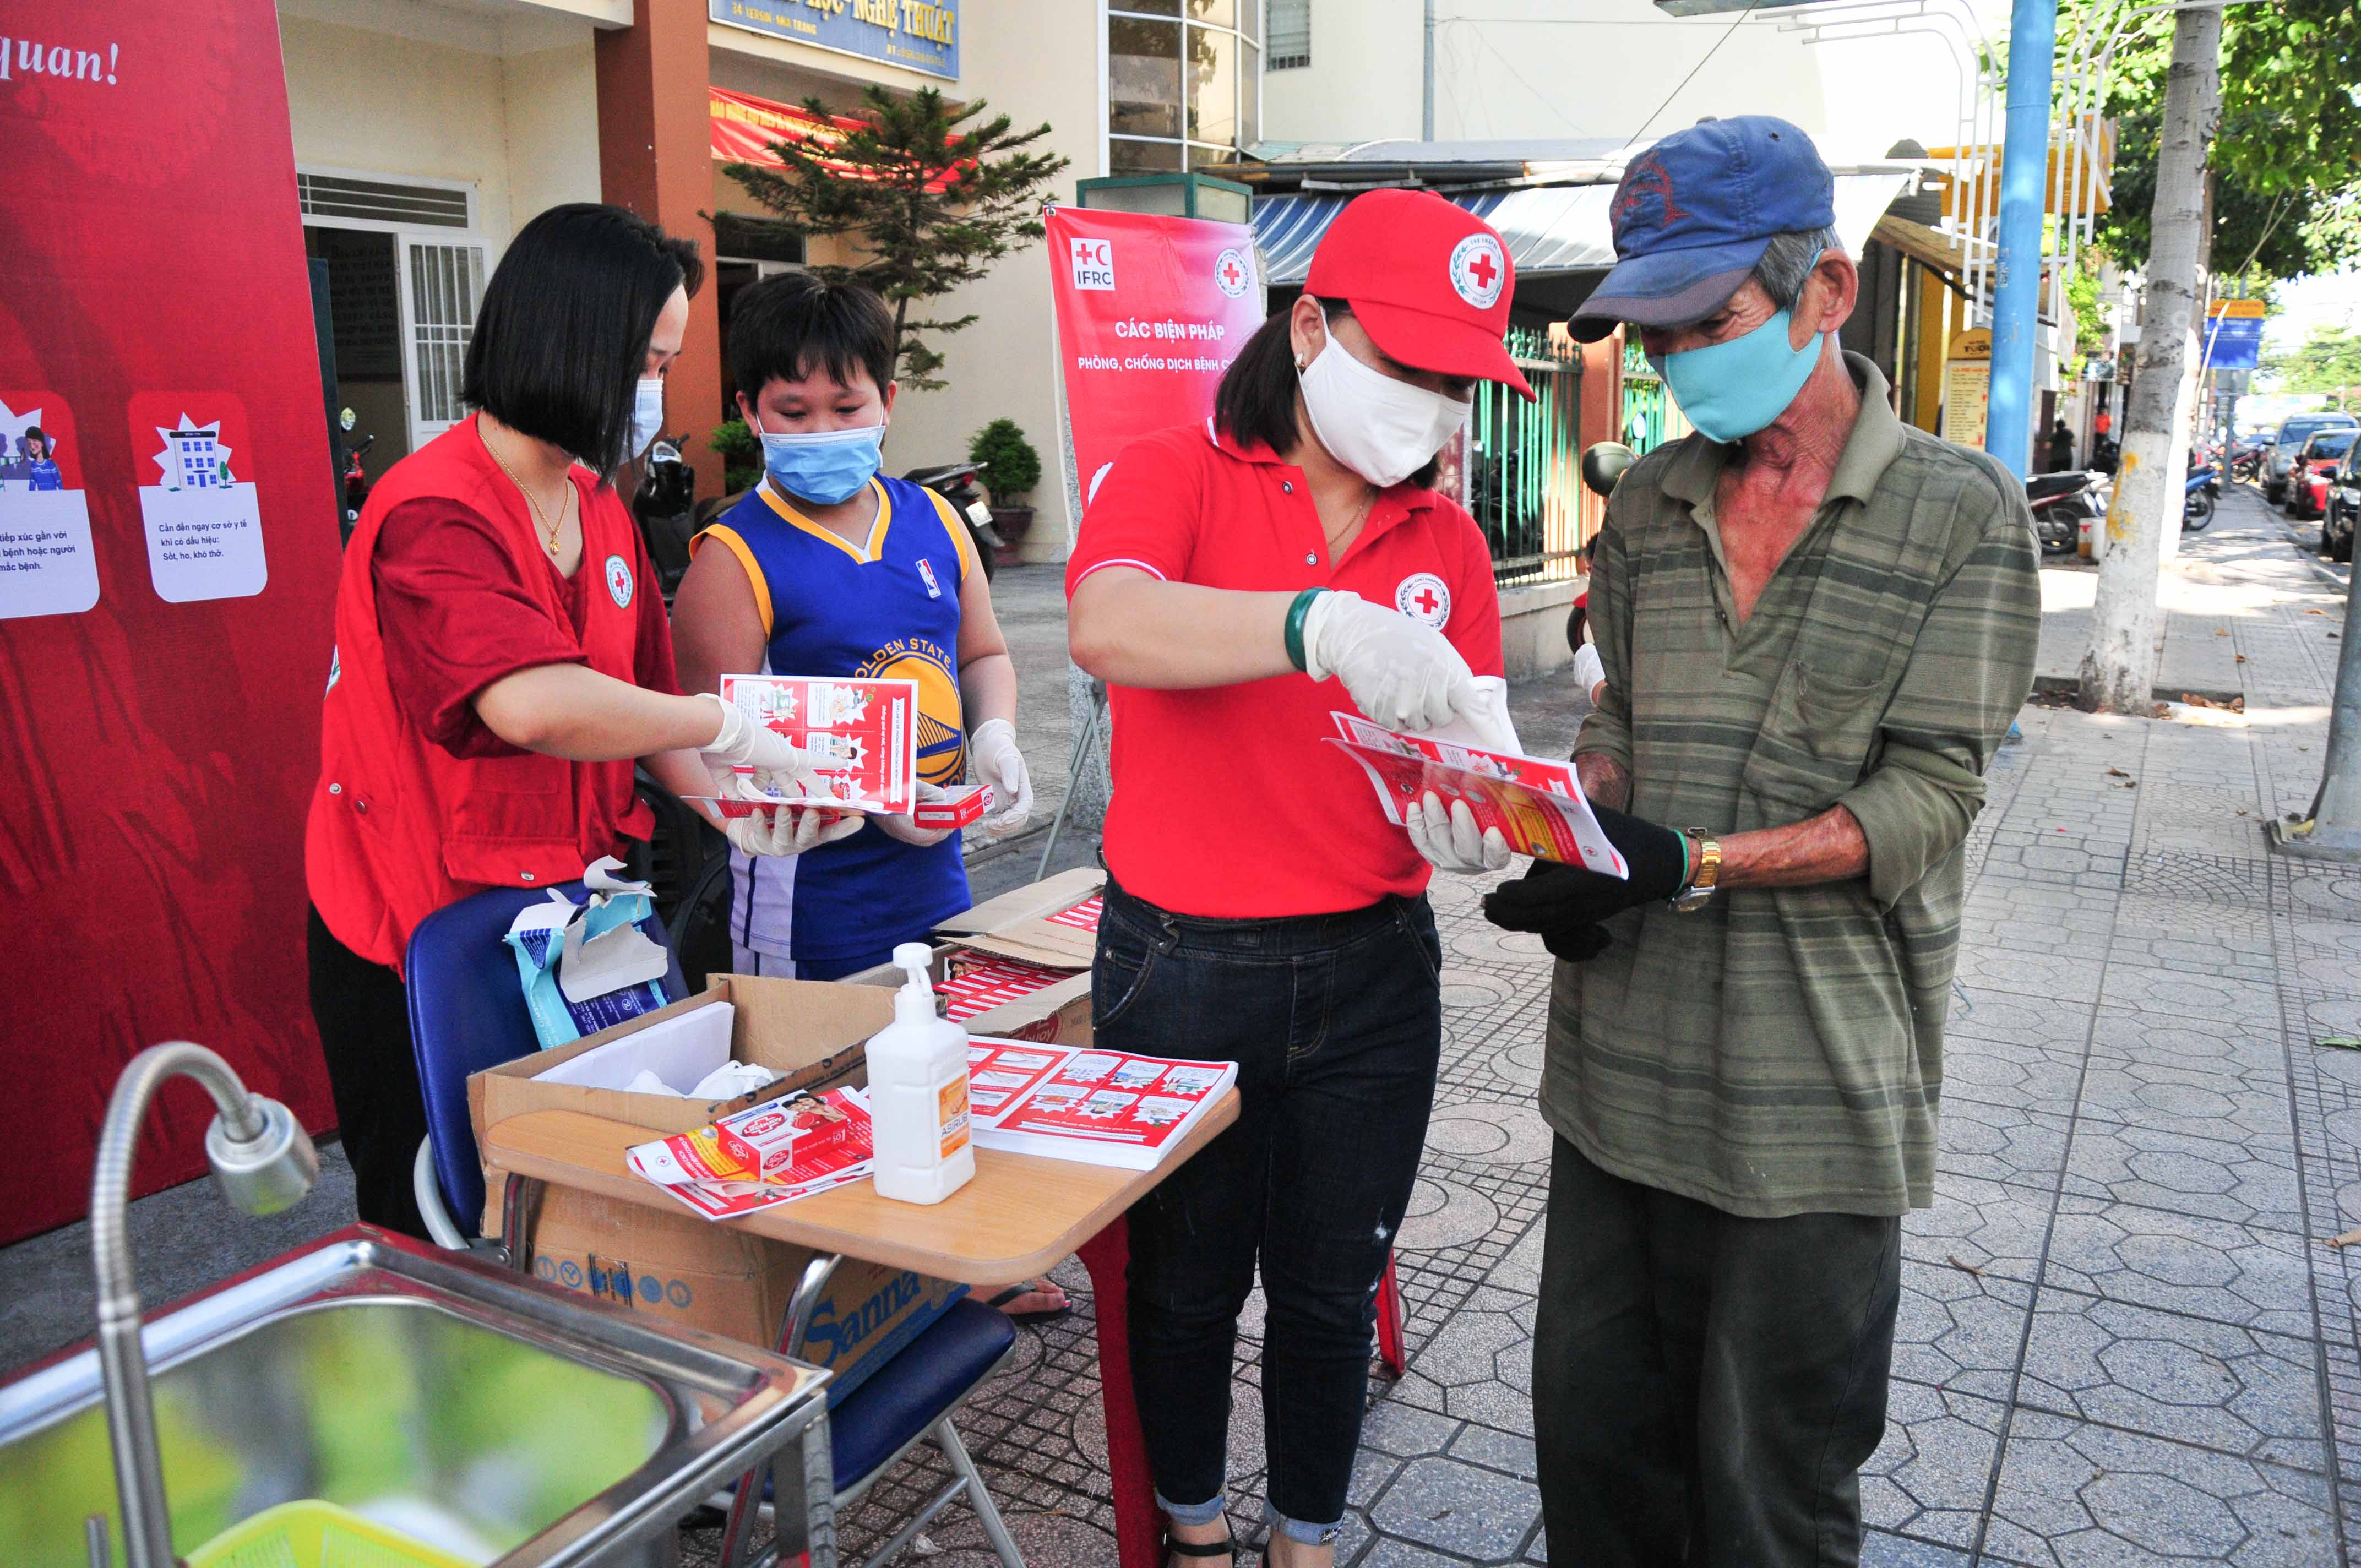 Hội Chữ thập đỏ tỉnh Khánh Hòa: Phát khẩu trang, xà phòng diệt khuẩn miễn phí cho người dân Thứ Ba, 04/08/2020, 15:55 [GMT+7]